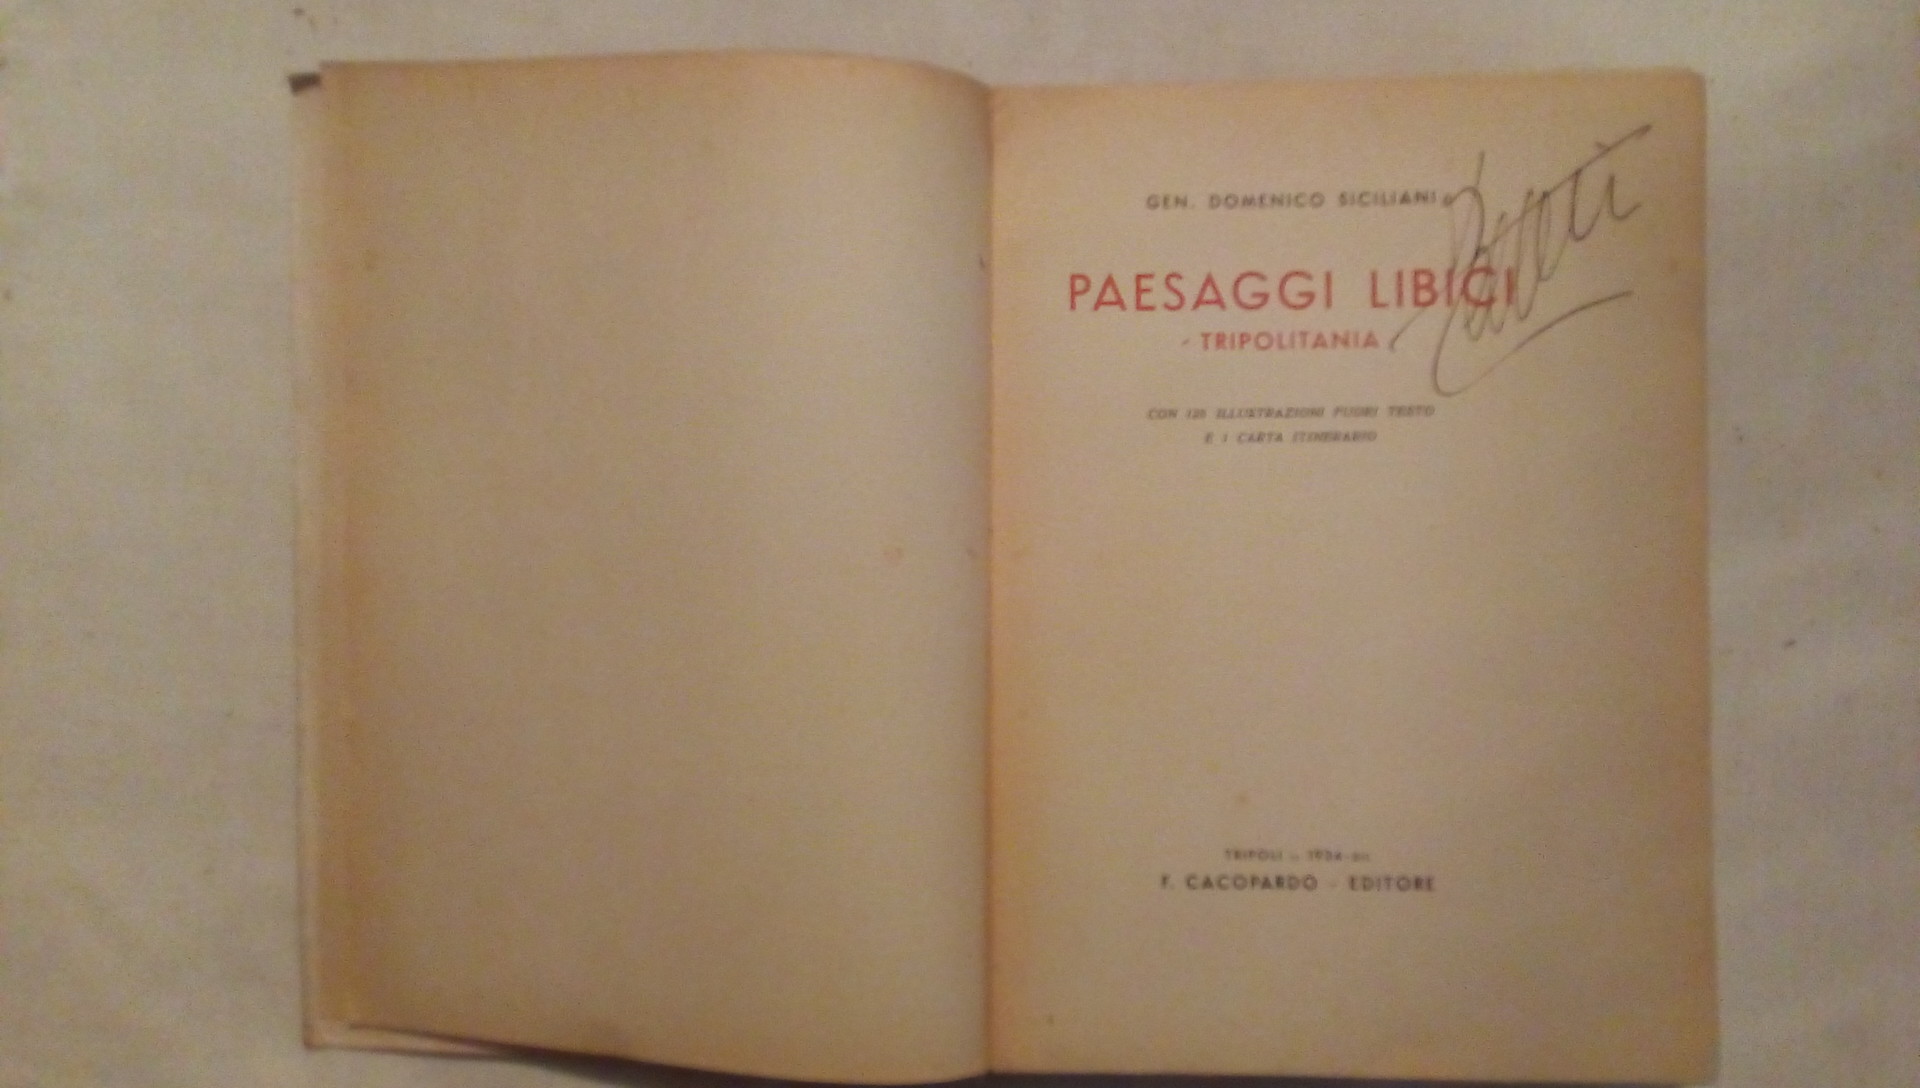 Paesaggi libici tripolitania - Gen. Domenico Siciliani Cacopardo editore 1934